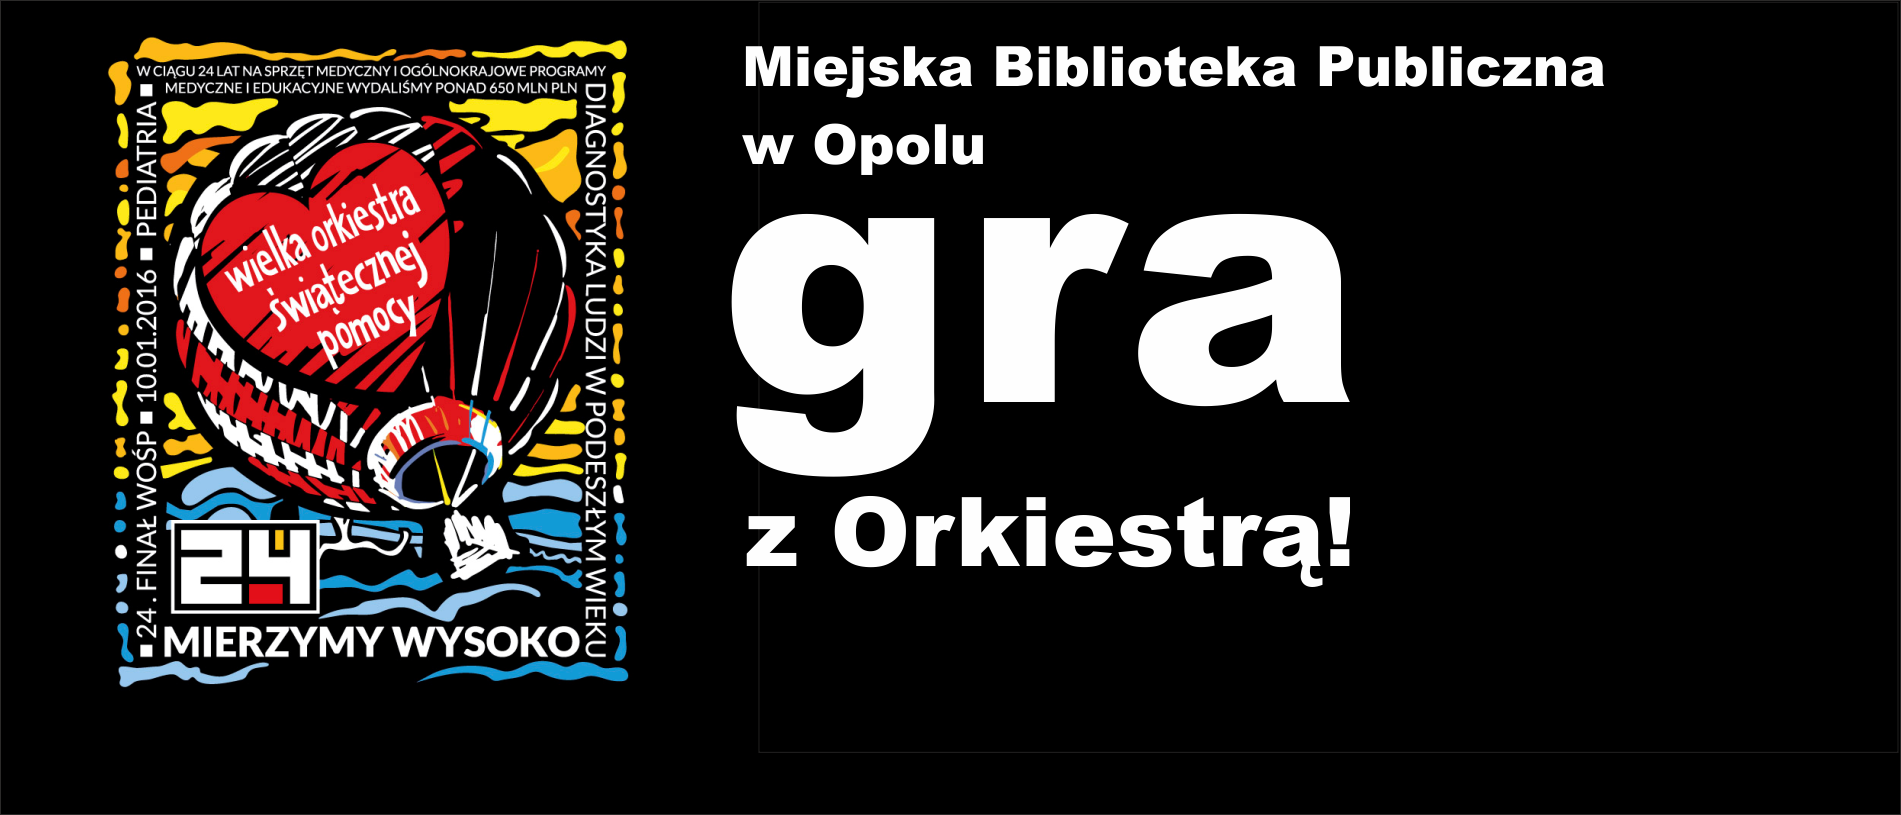 Miejska Biblioteka Publiczna w Opolu gra z orkiestrą!